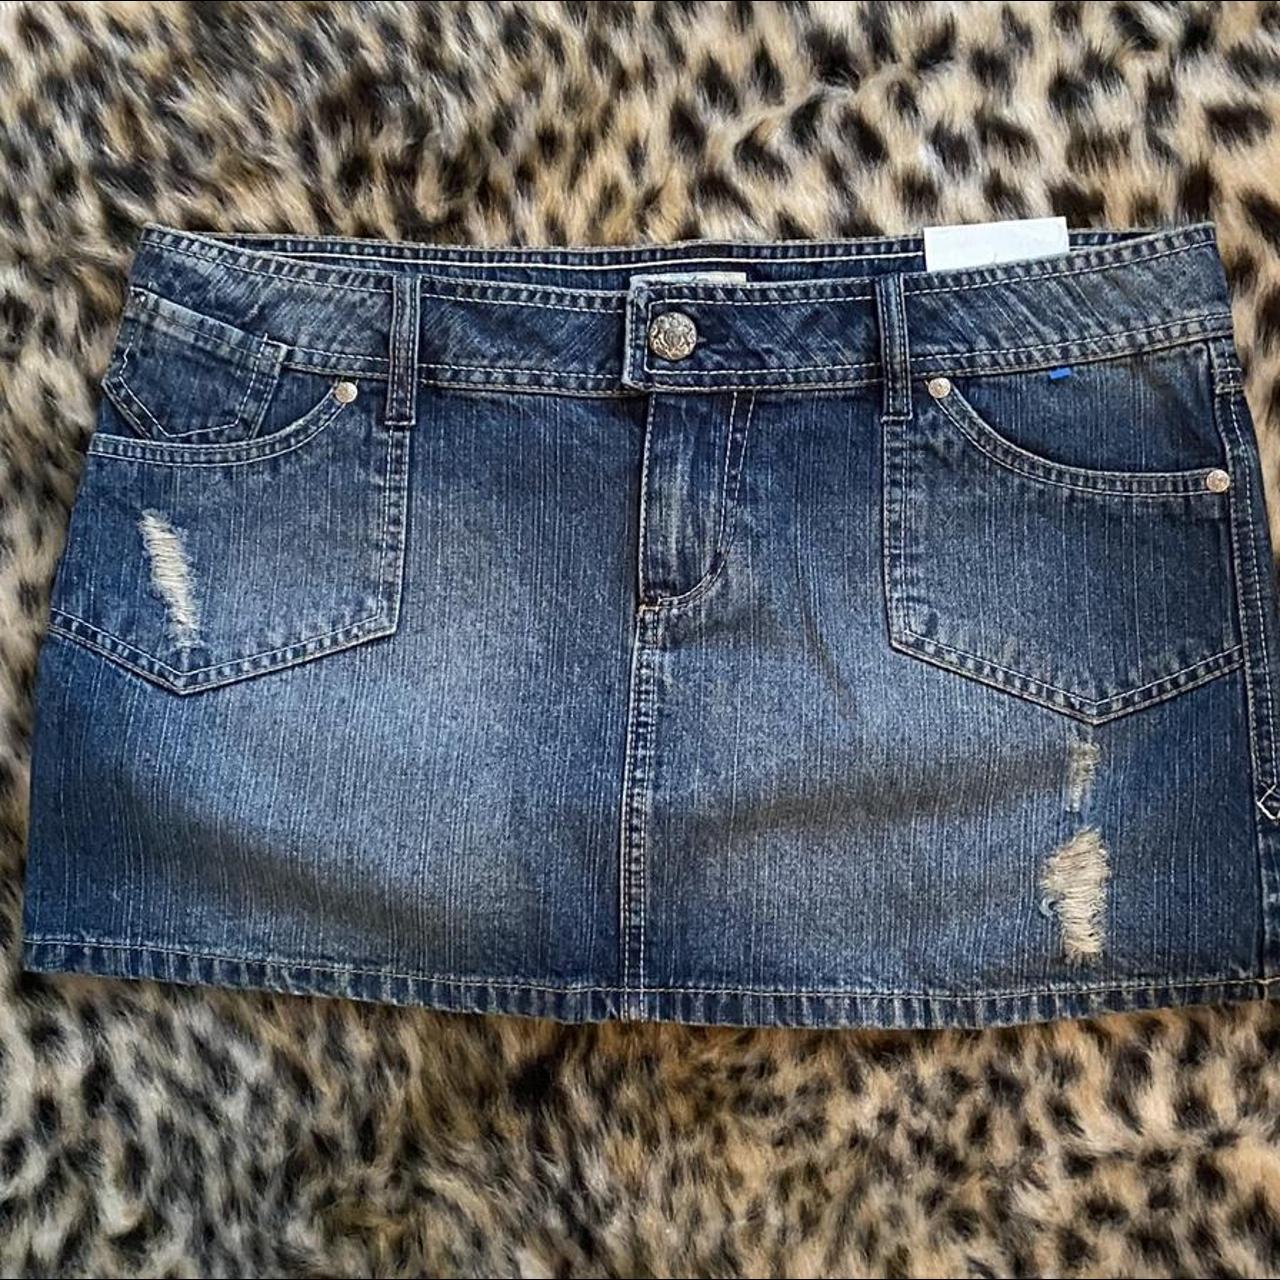 Jean Mini Skirt Y2K, tags still on, size 11 eleven,... - Depop